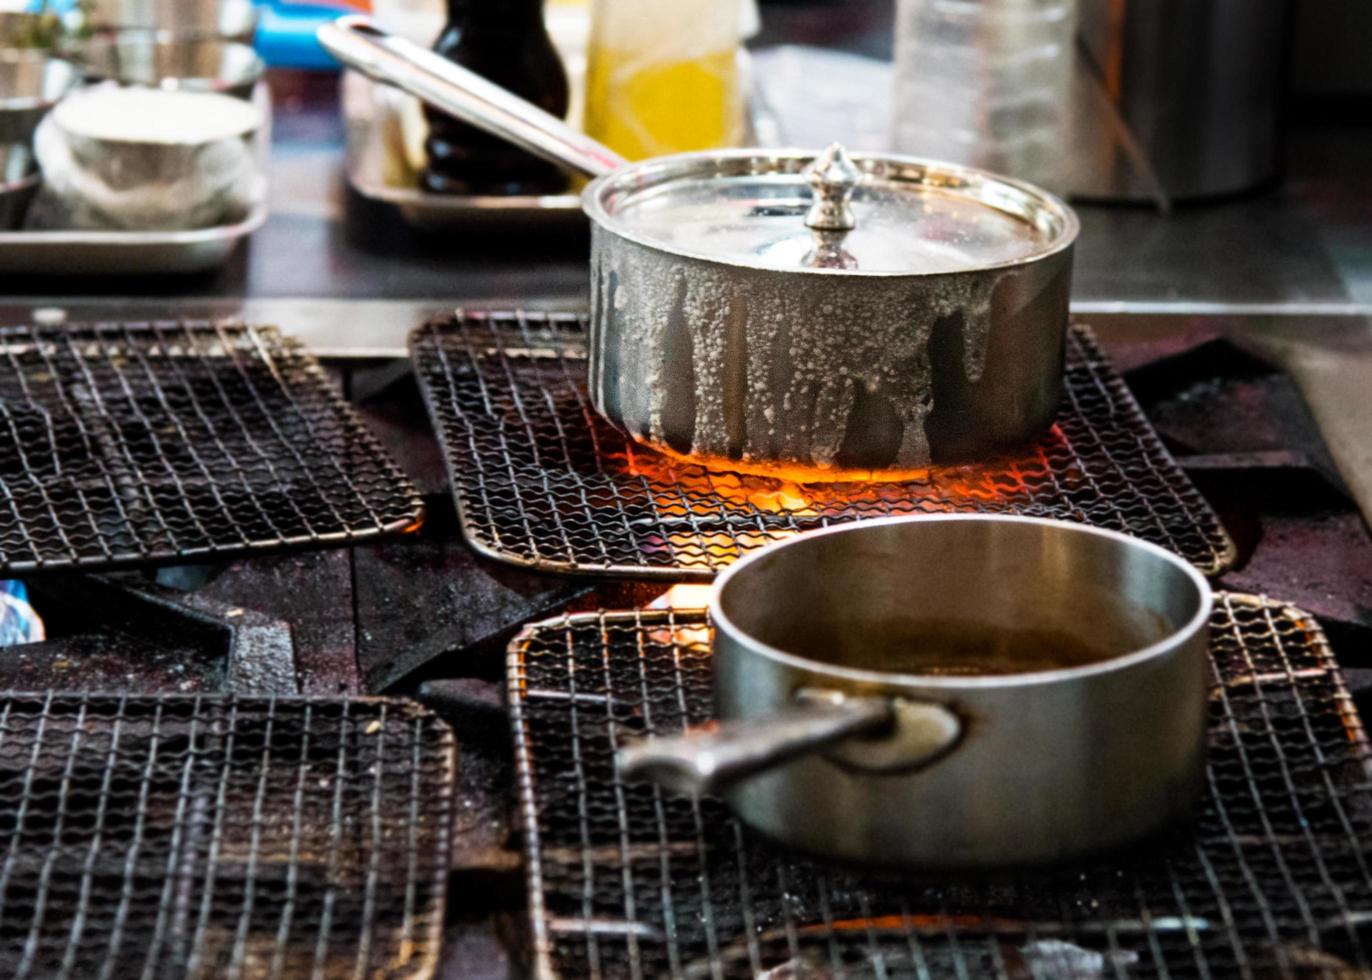 chef cuisinier avec flamme dans une poêle à frire sur une cuisinière photo